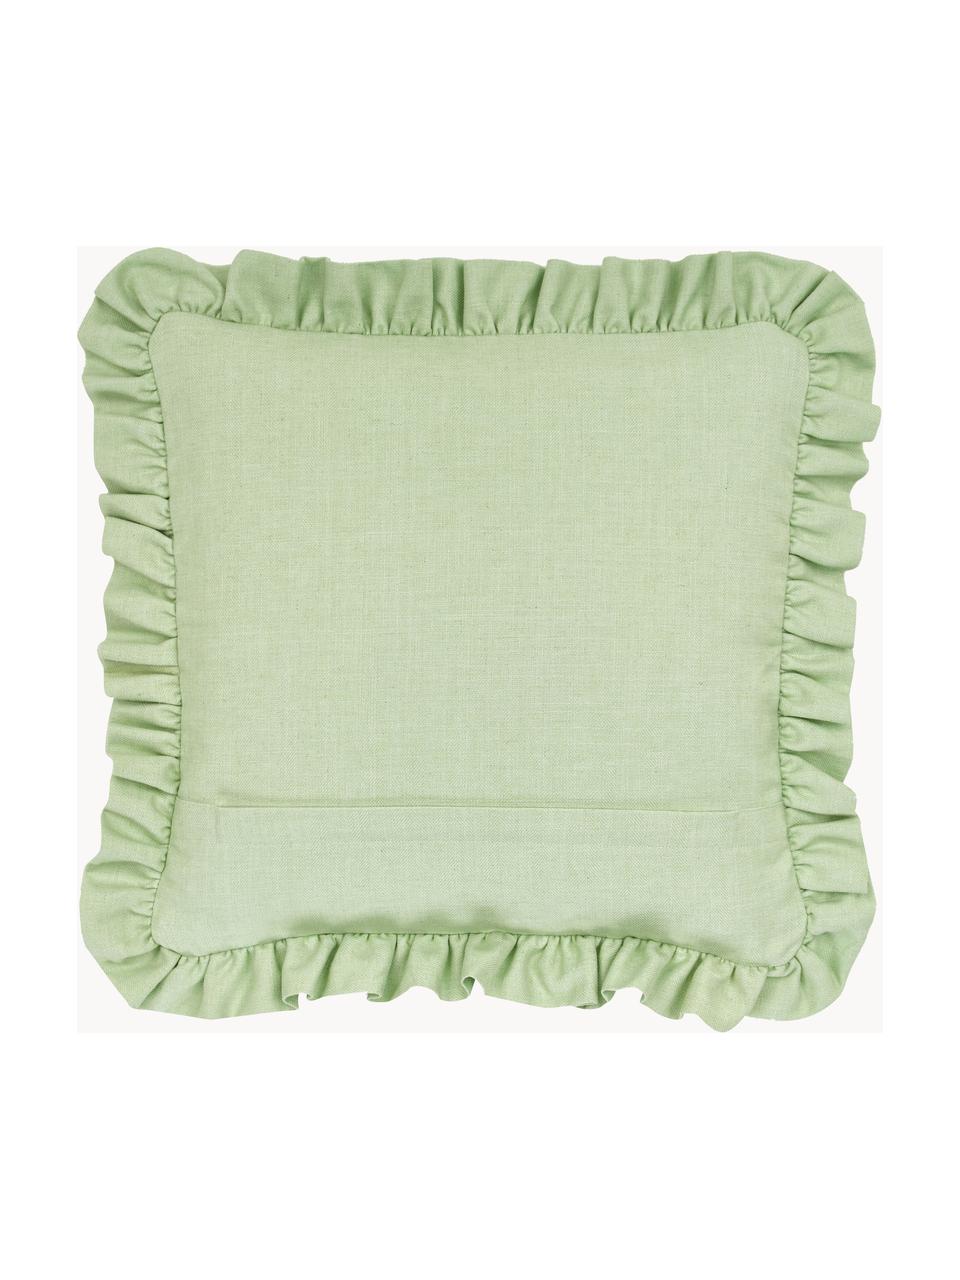 Kissenhülle Camille mit Rüschen, 60% Polyester, 25% Baumwolle, 15% Leinen, Hellgrün, B 45 x L 45 cm